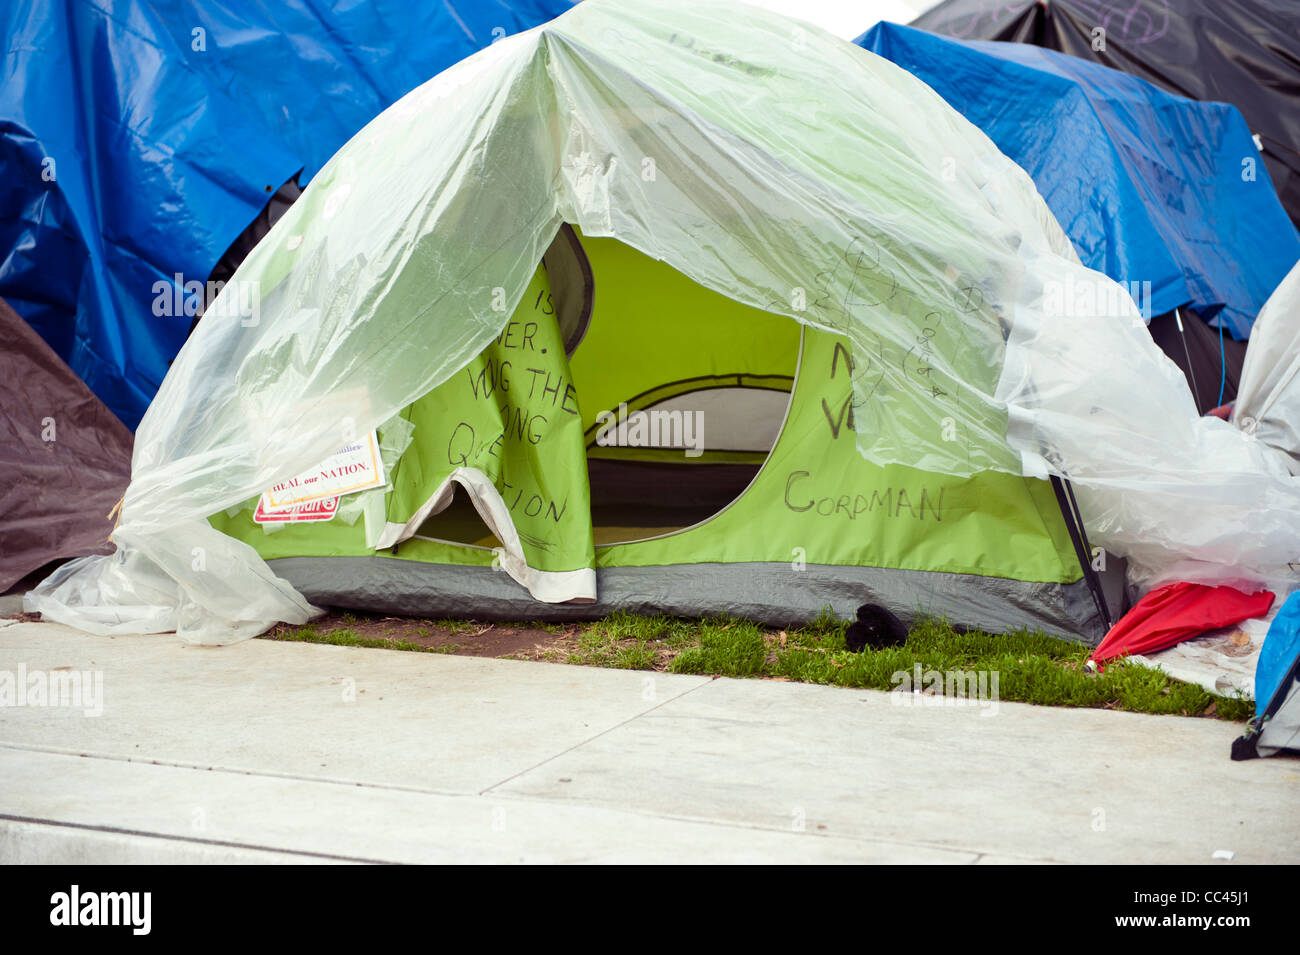 Les tentes de l'occuper de protestation de Washington DC sont essentiellement vides pendant la semaine et occupés pendant le week-end, Banque D'Images